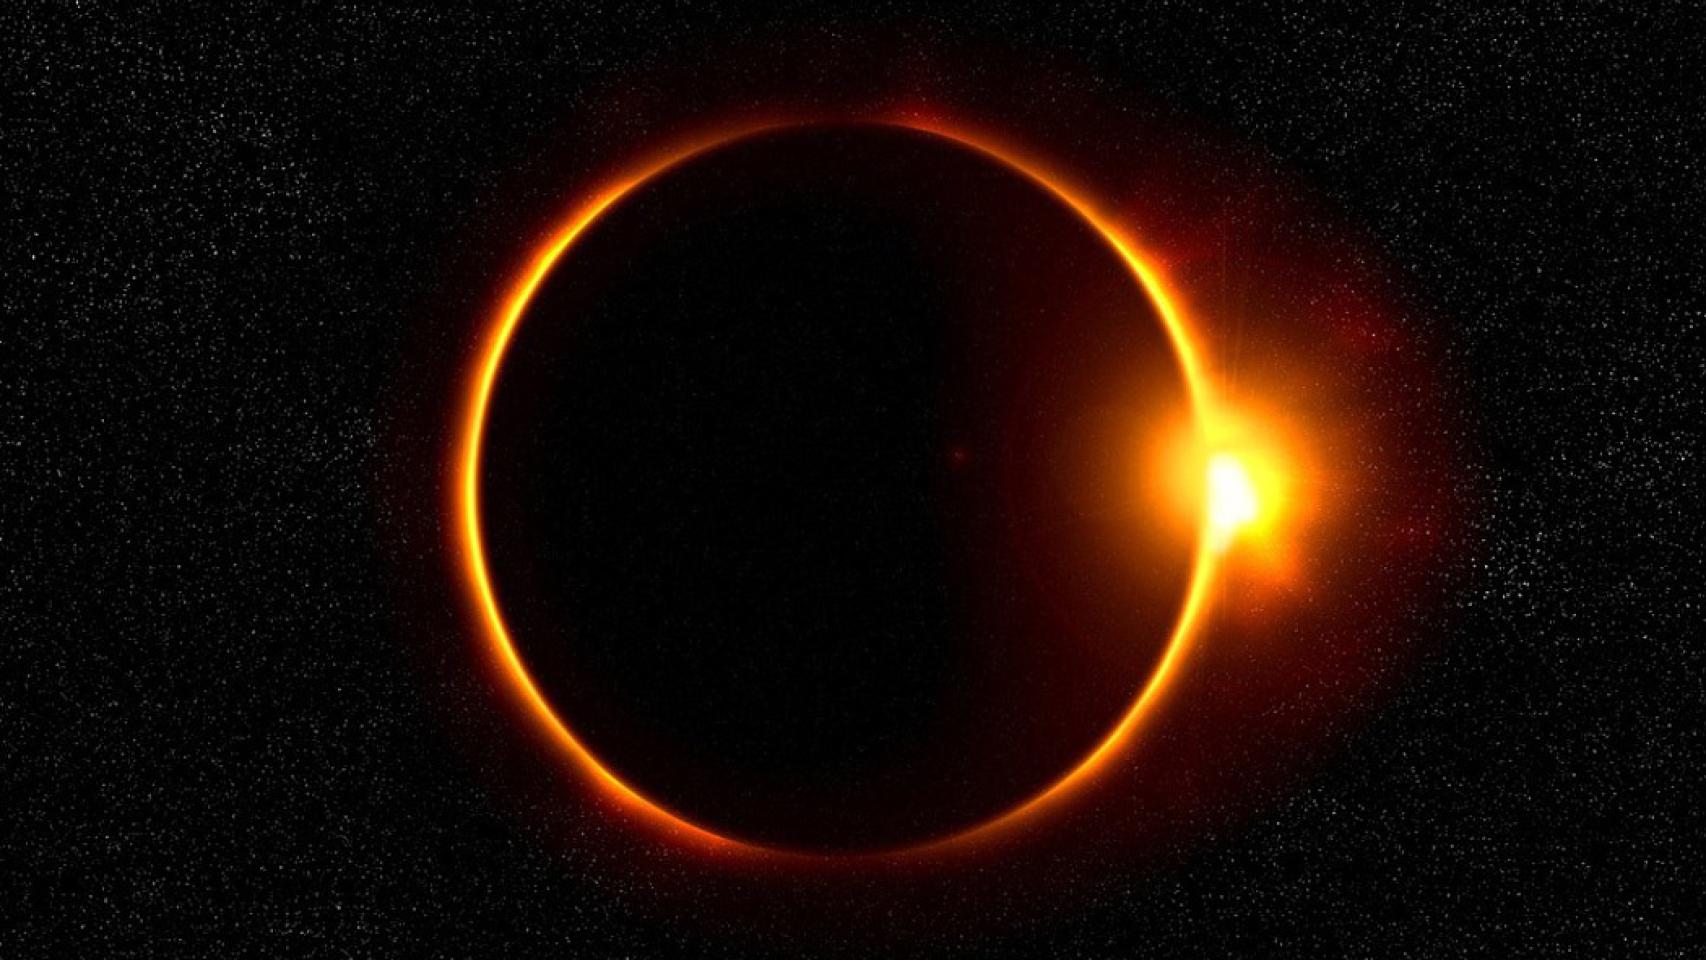 ¿Cómo hacer fotos al eclipse de sol? Te lo explicamos